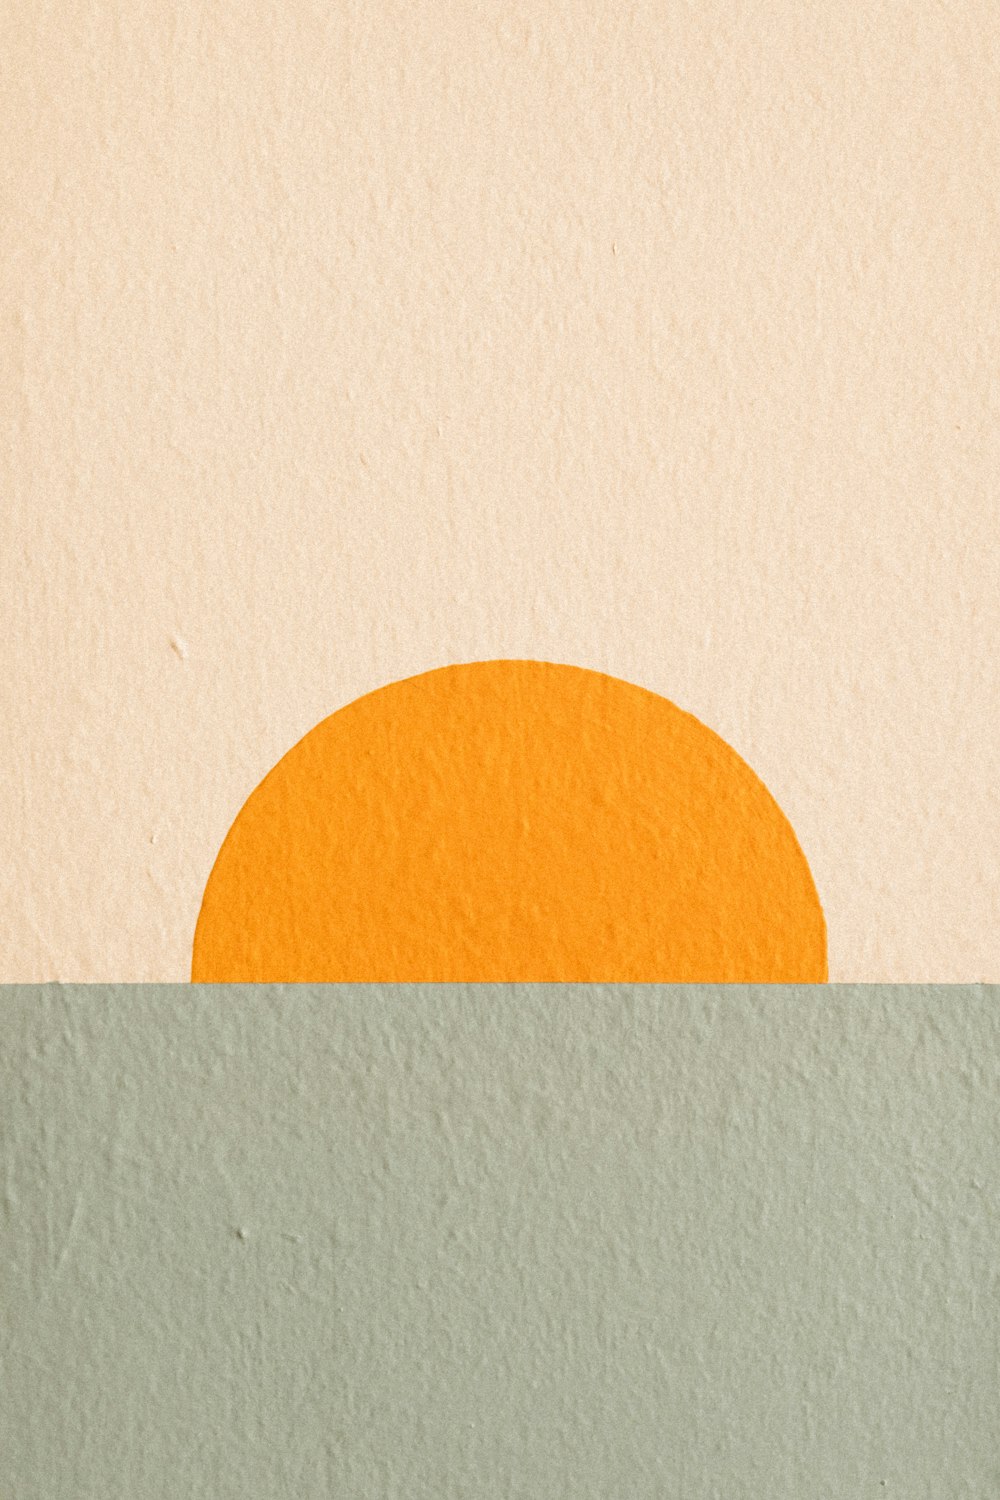 Un dipinto di un sole arancione nel mezzo di uno specchio d'acqua